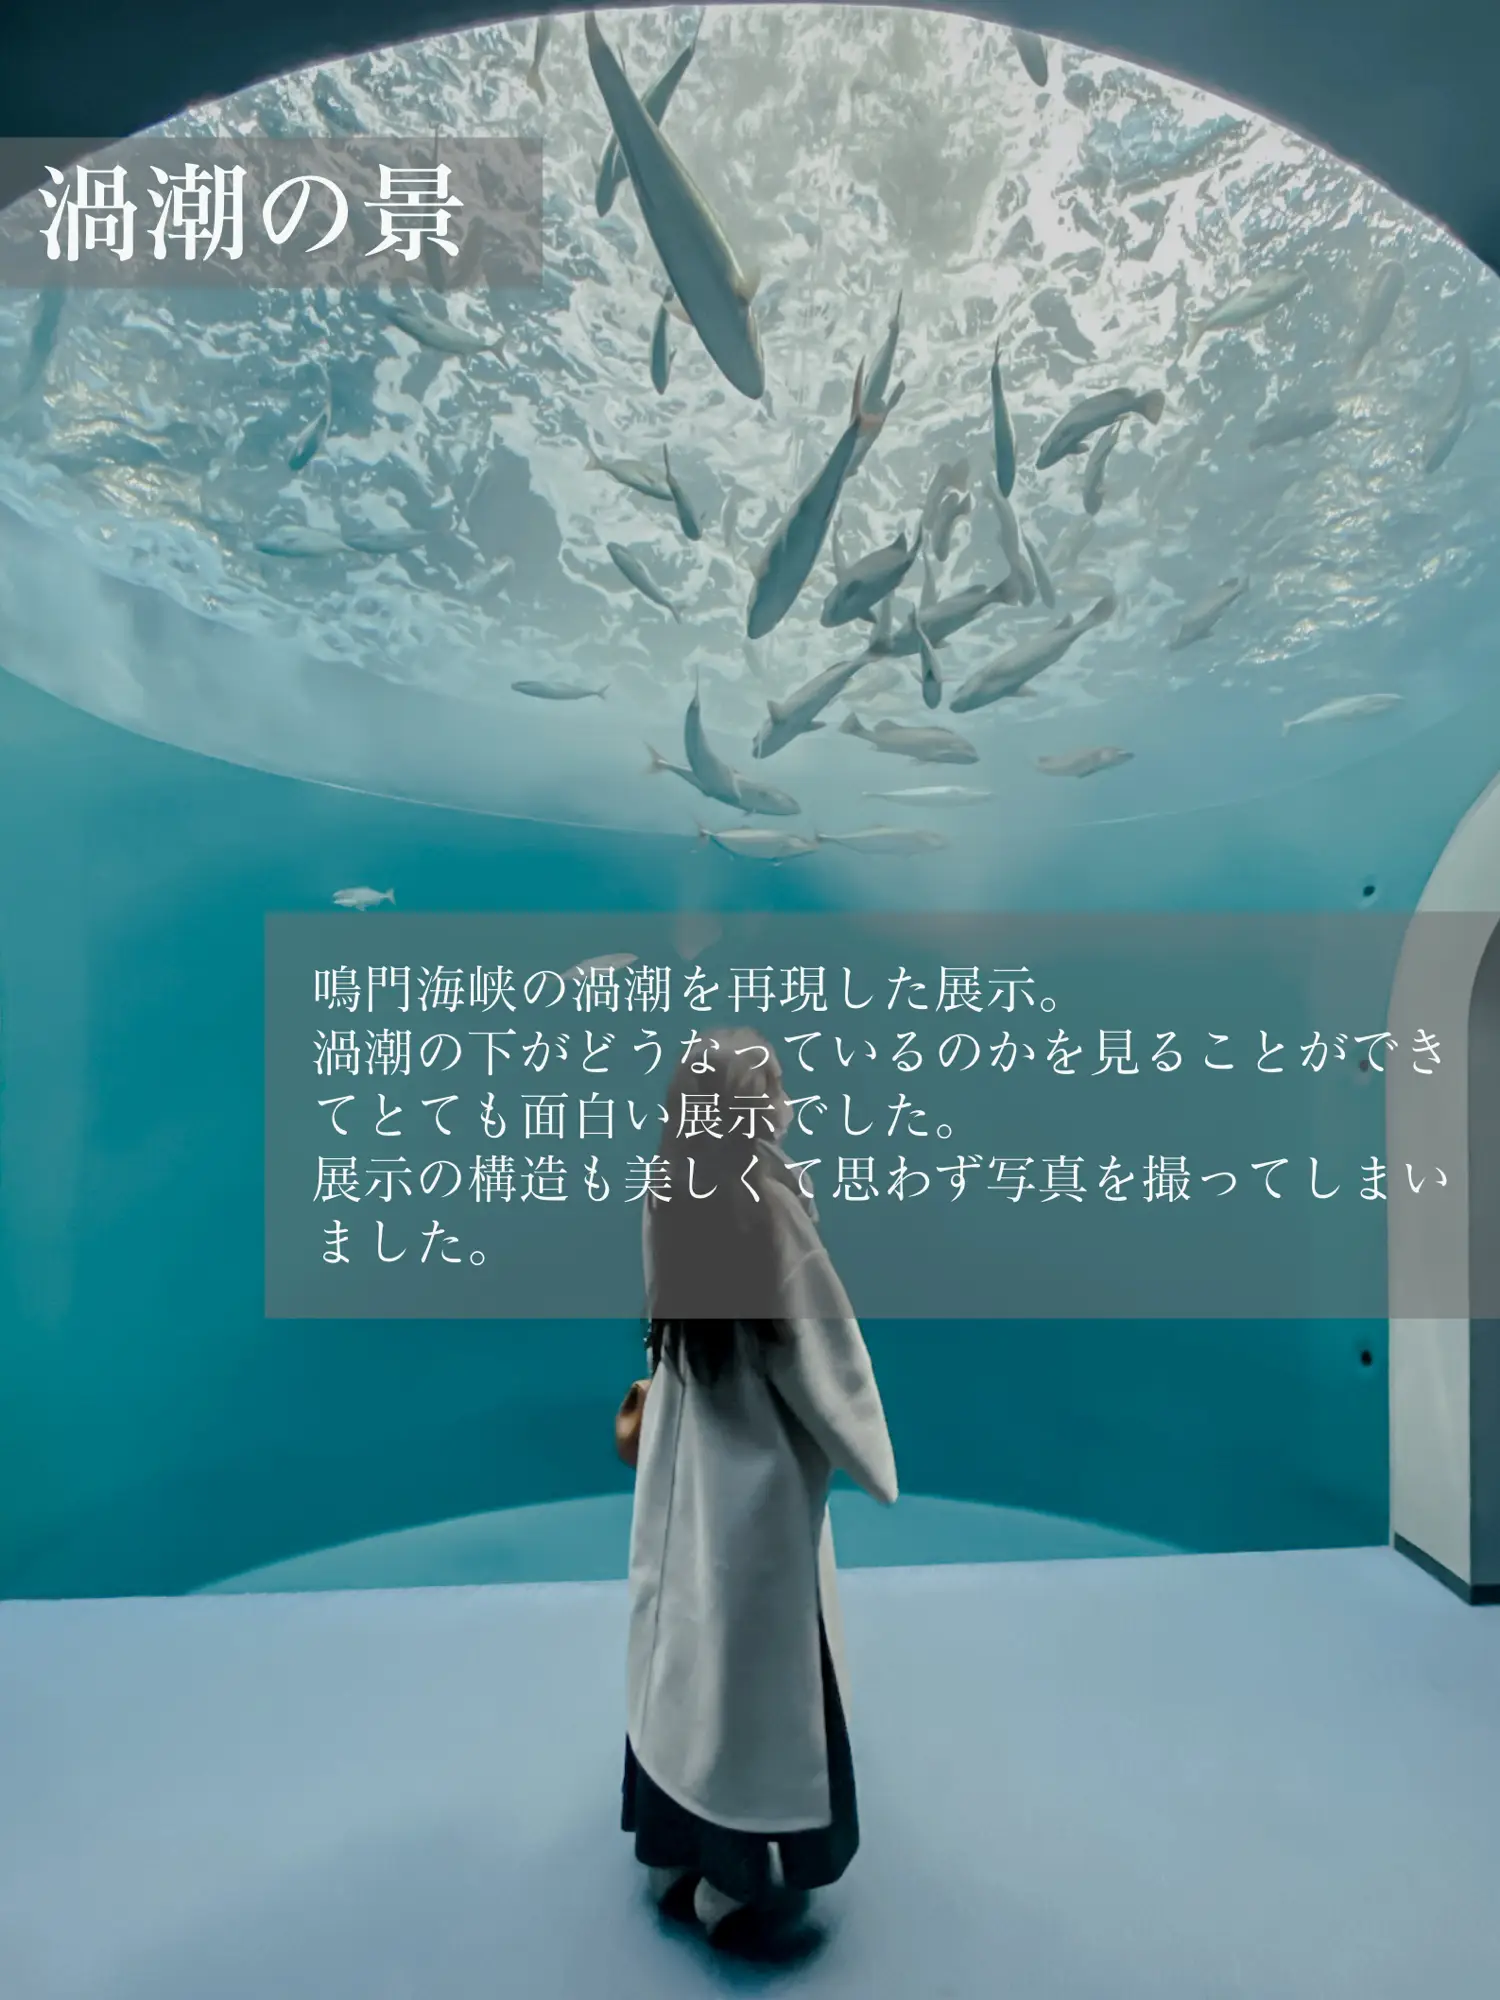 【香川県】幻想的な空間が楽しめる-四国水族館-の画像 (3枚目)